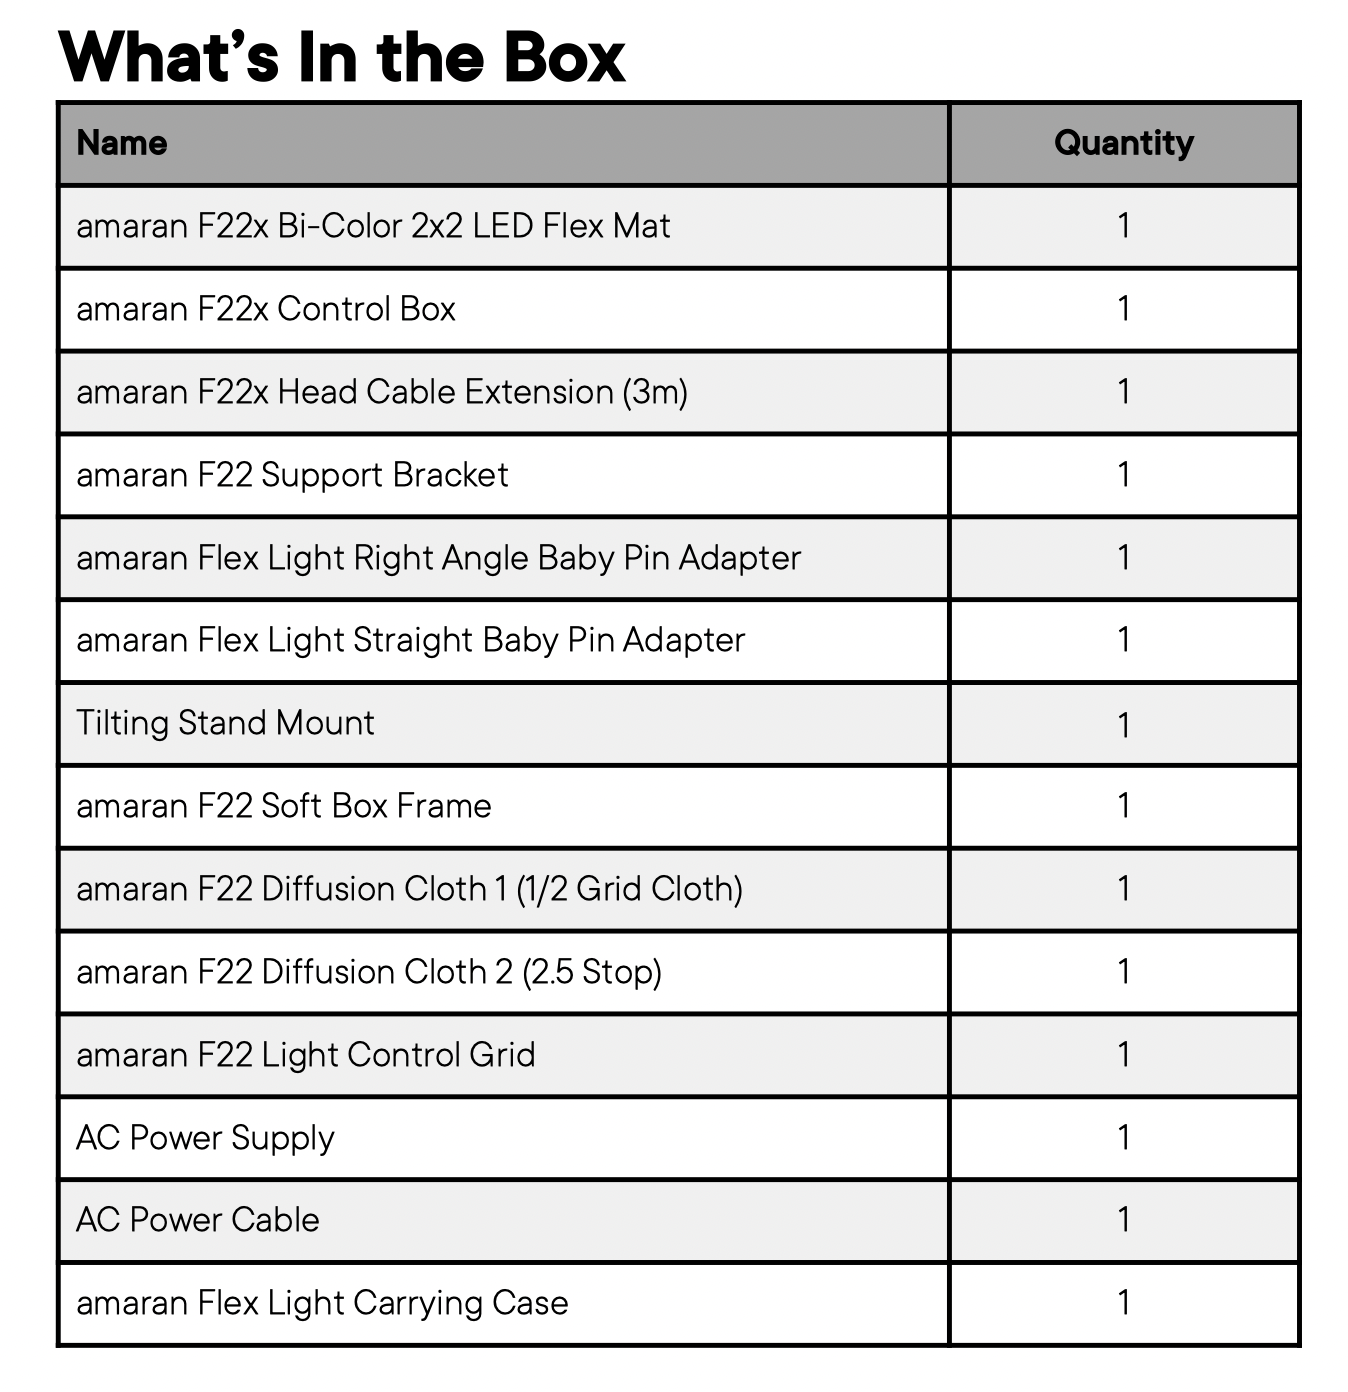 Amaran F22x Bi-color LED mat in the box